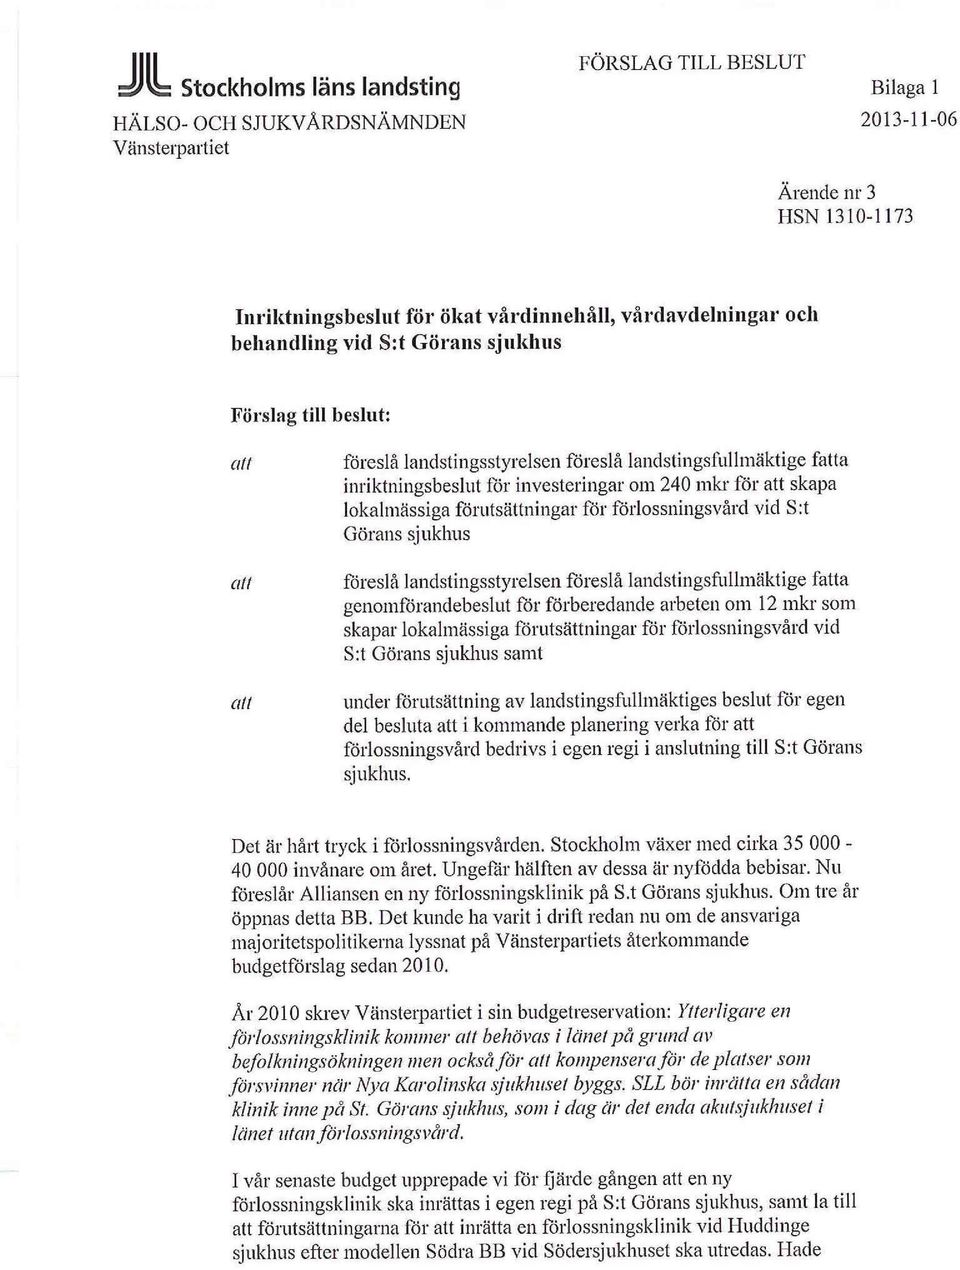 förutsättningar för förlossningsvård vid S:t Görans sjukhus föreslå landstingsstyrelsen föreslå landstingsfullmäktige fa genomförandebeslut för förberedande arbeten om 12 mkr som skapar lokalmässiga